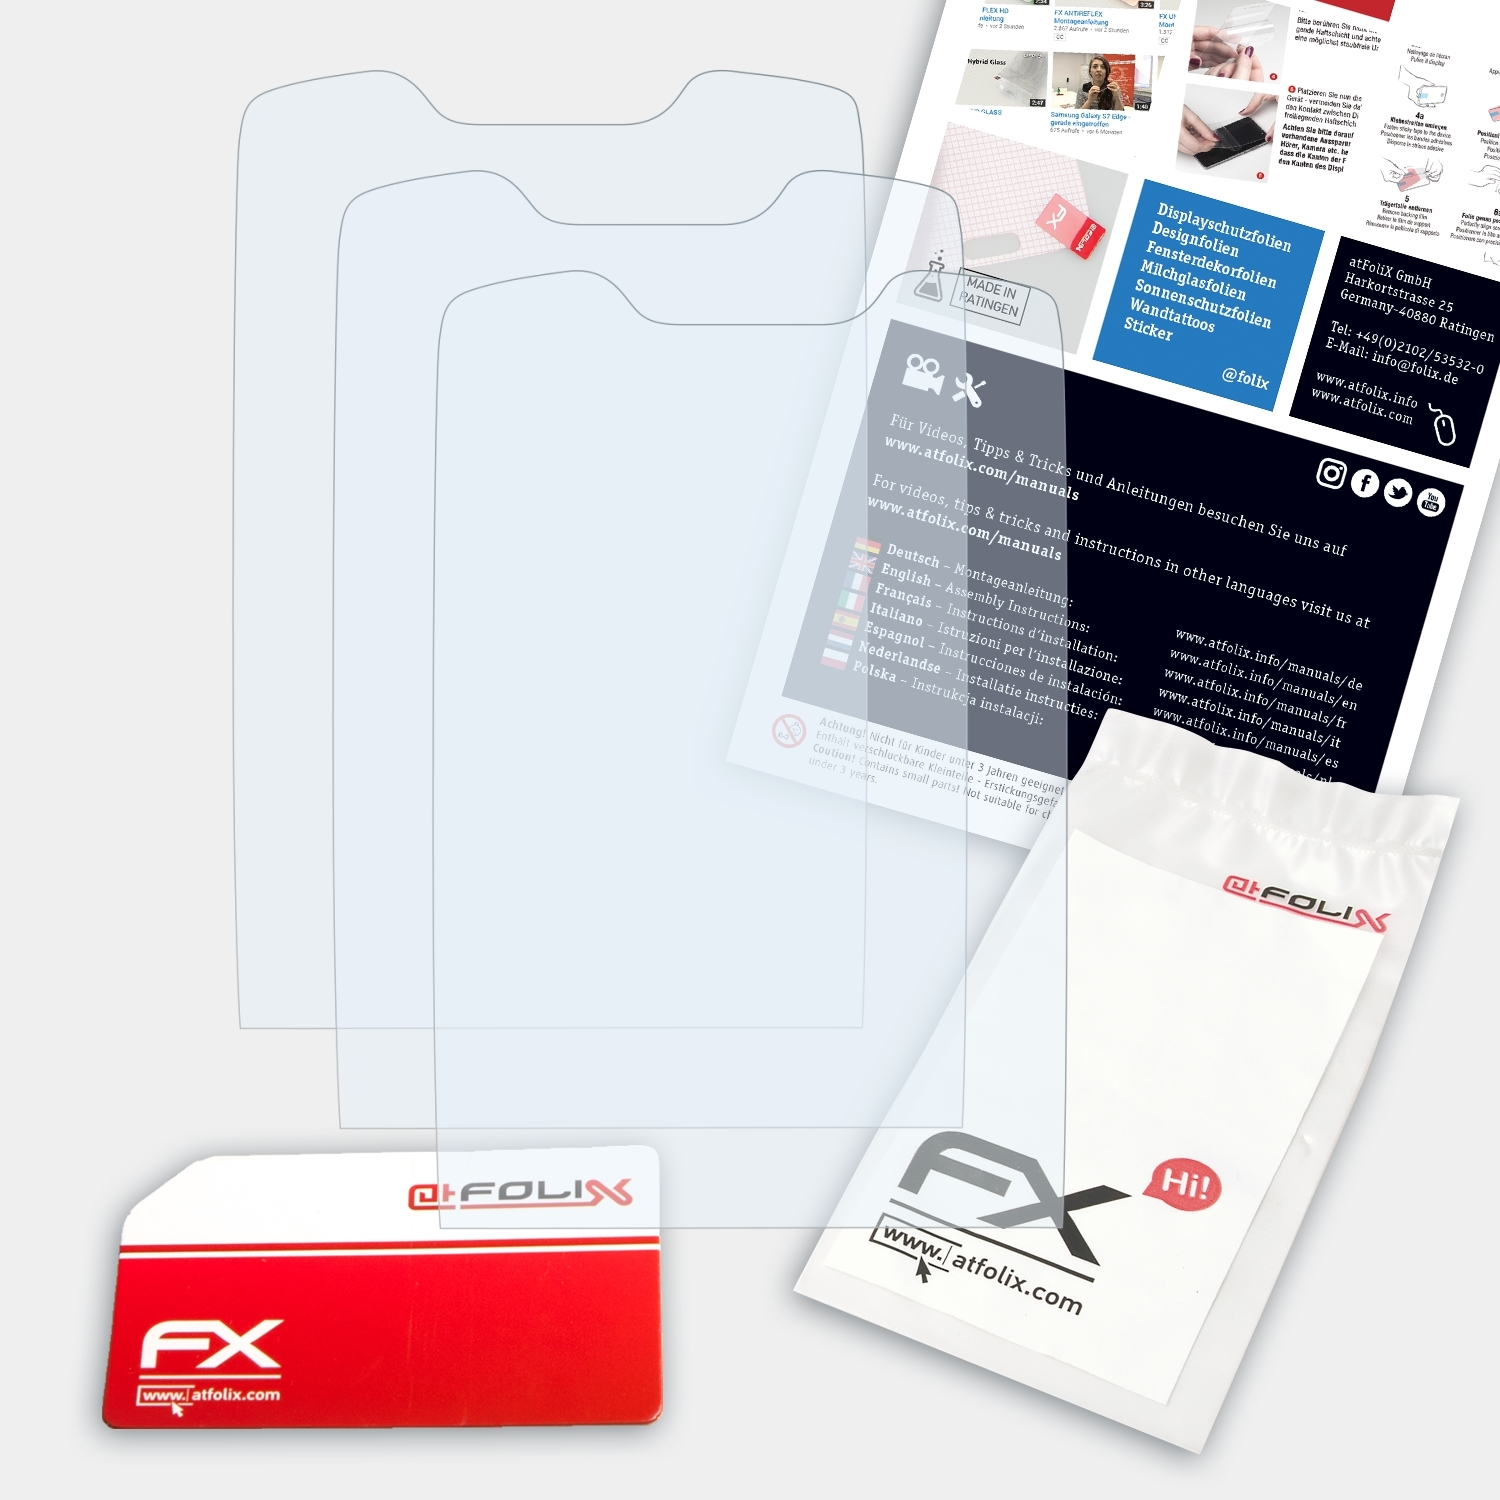 FX-Clear ATFOLIX 3110 Nokia 3x Displayschutz(für Classic)